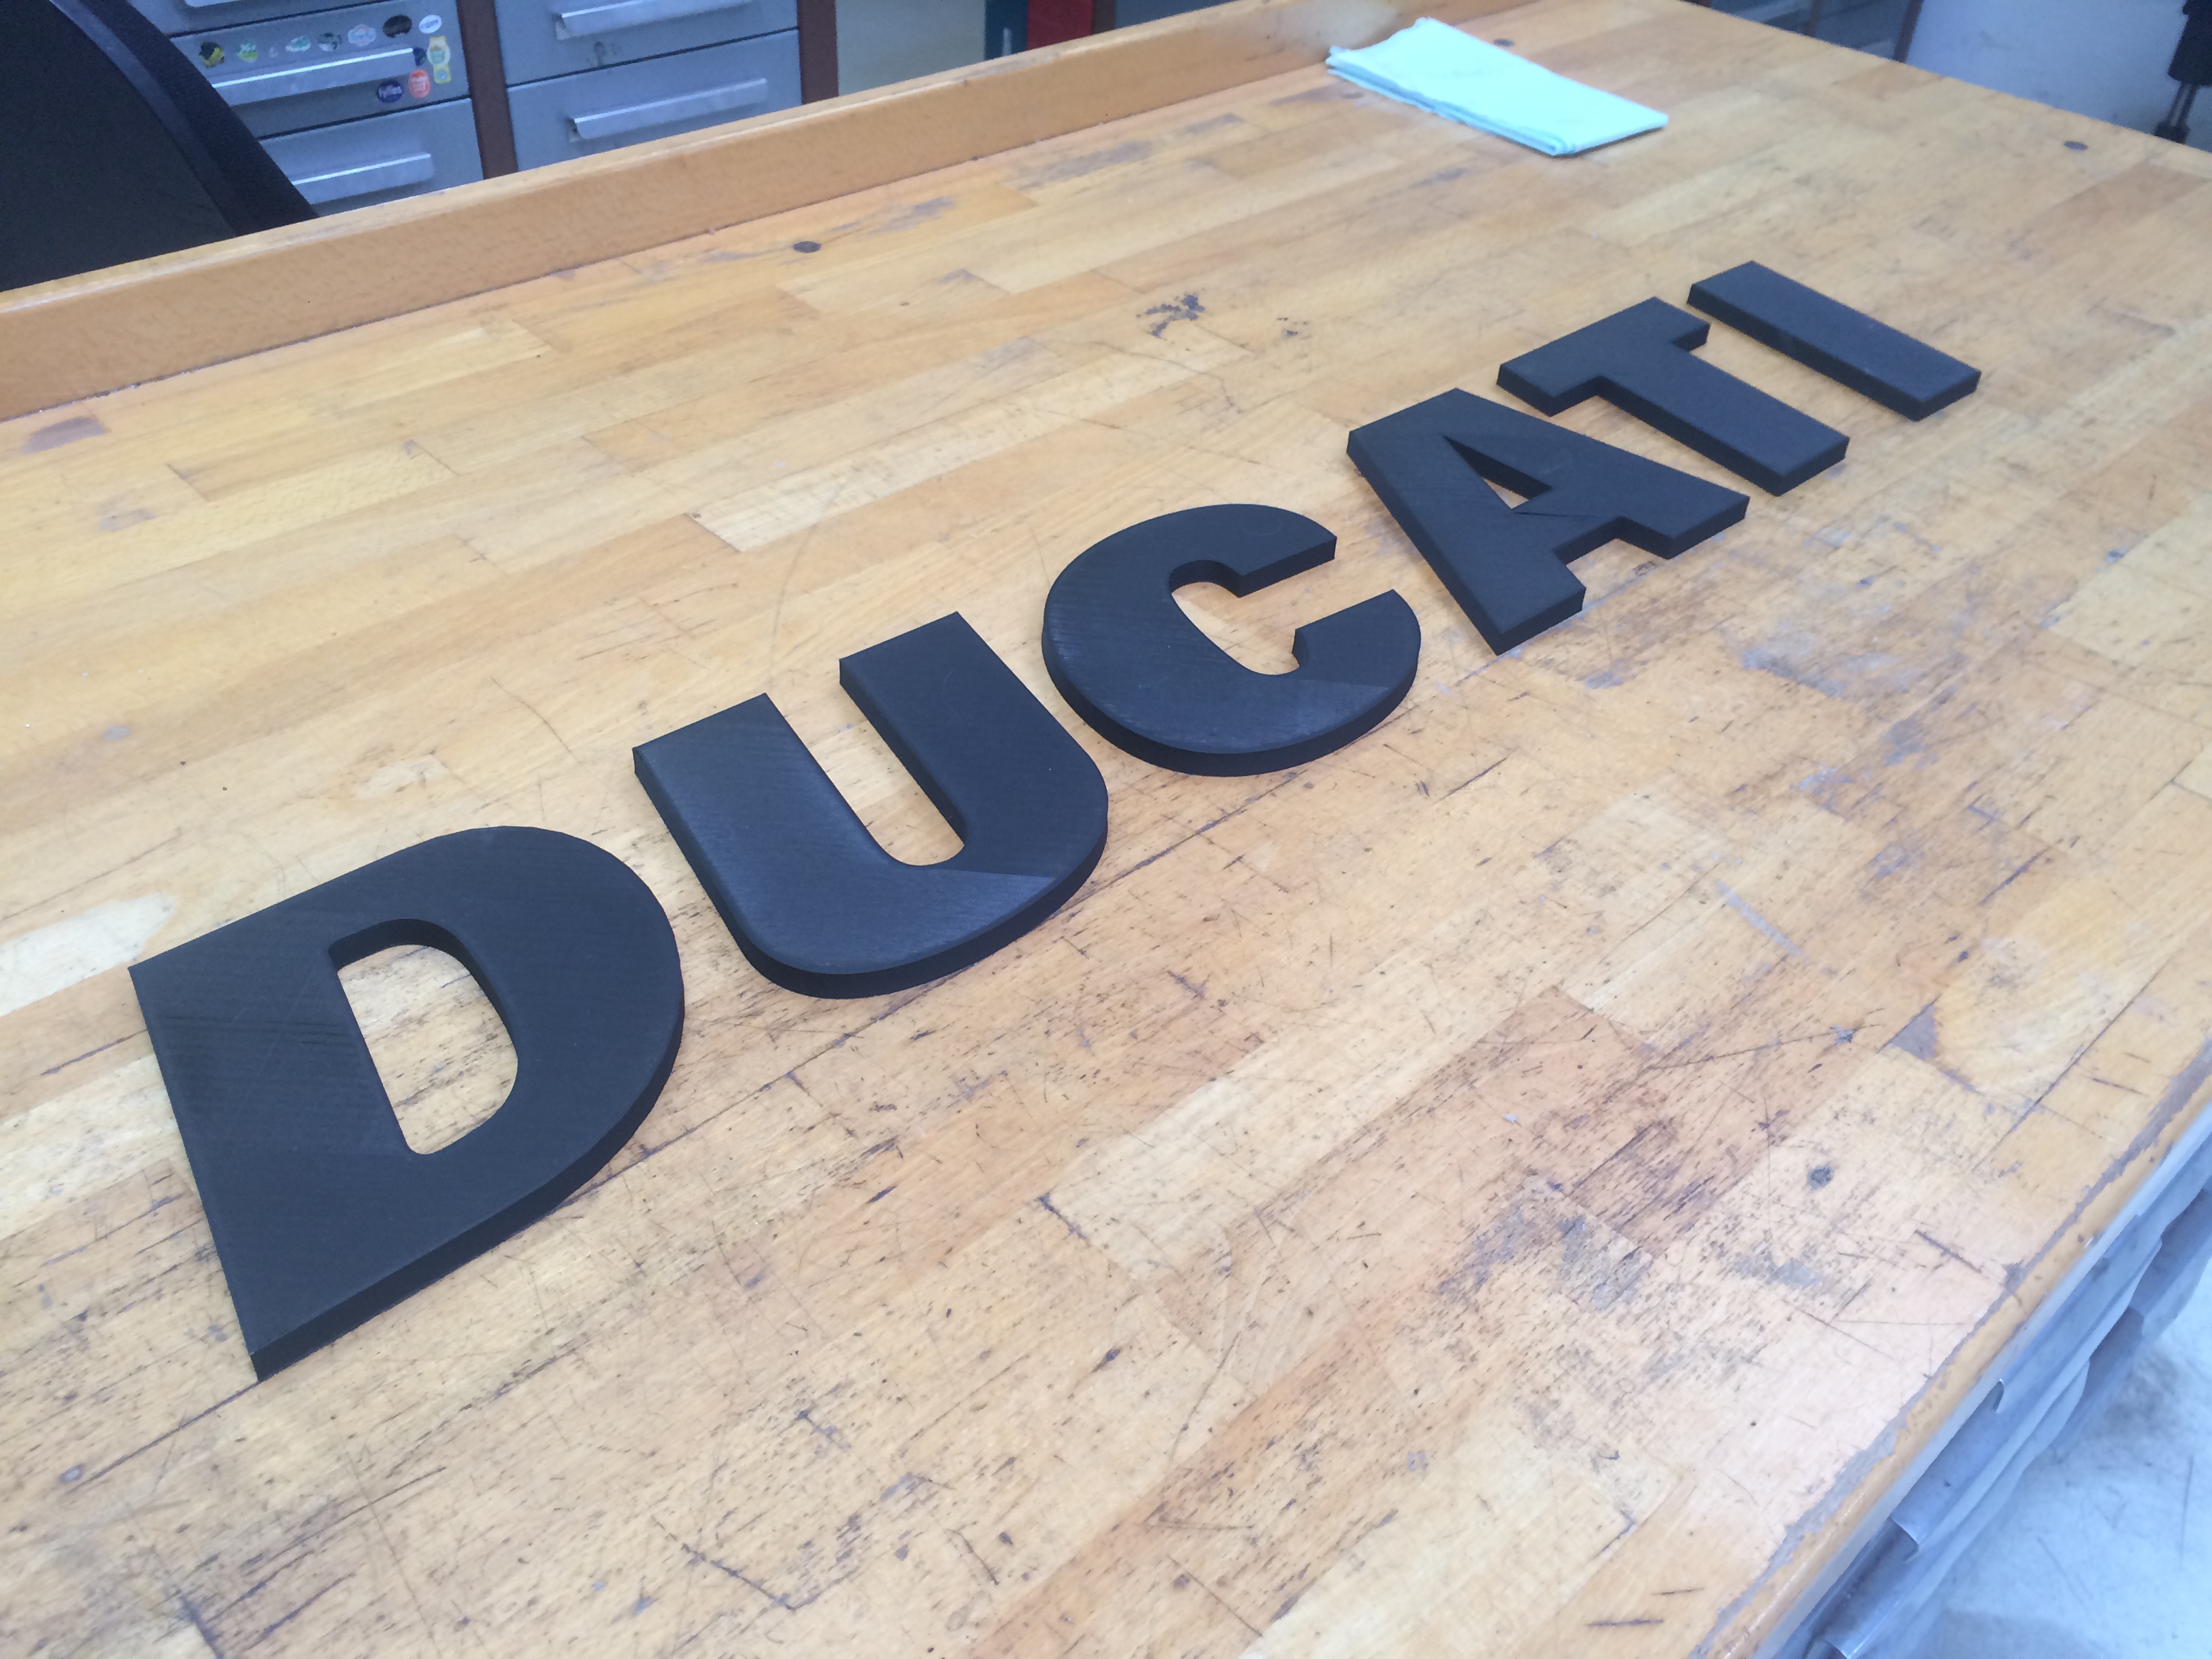 DUCATI logo on the wall